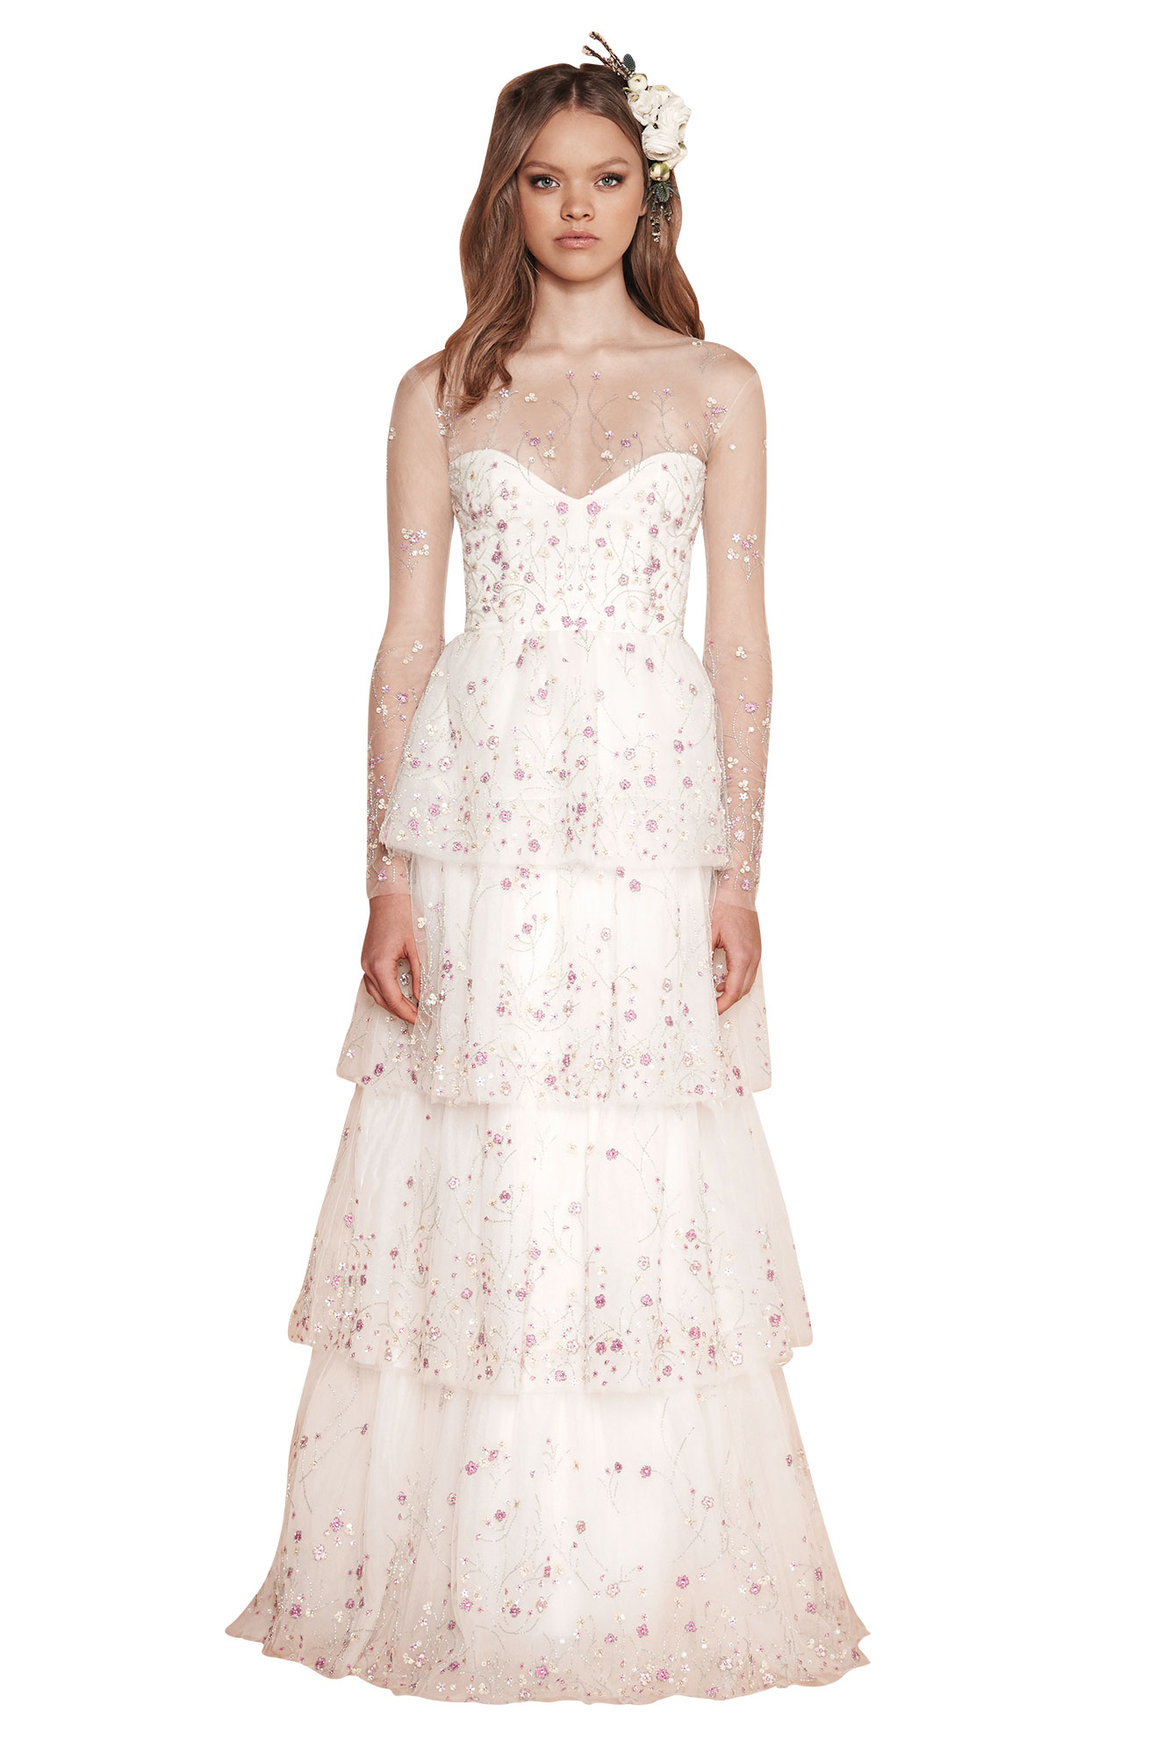 sabrina dahan floral wedding dress